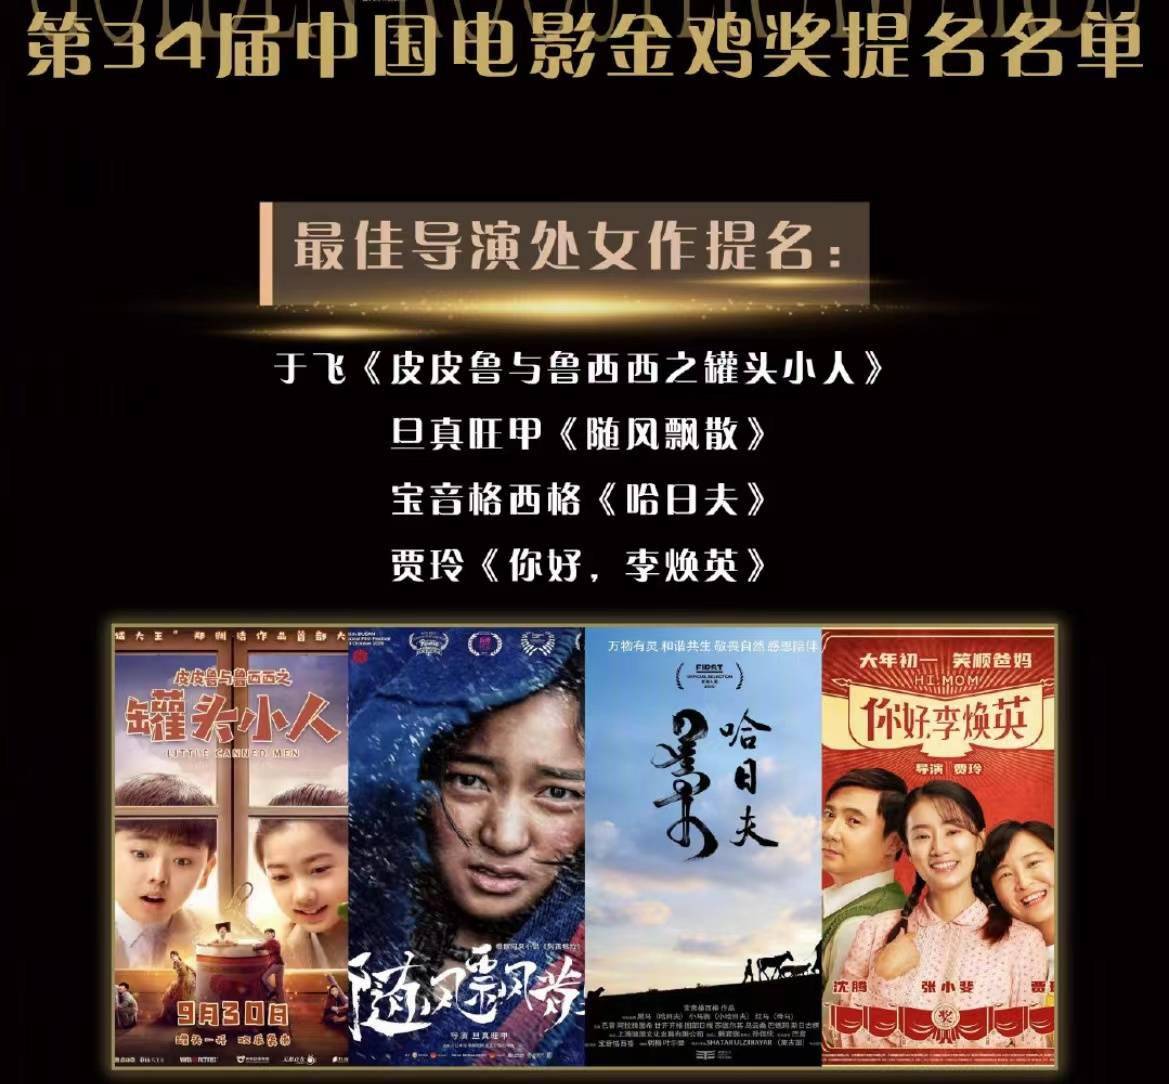 於飛獲第34屆中國電影金雞獎最佳導演處女作提名 娛樂 第1張